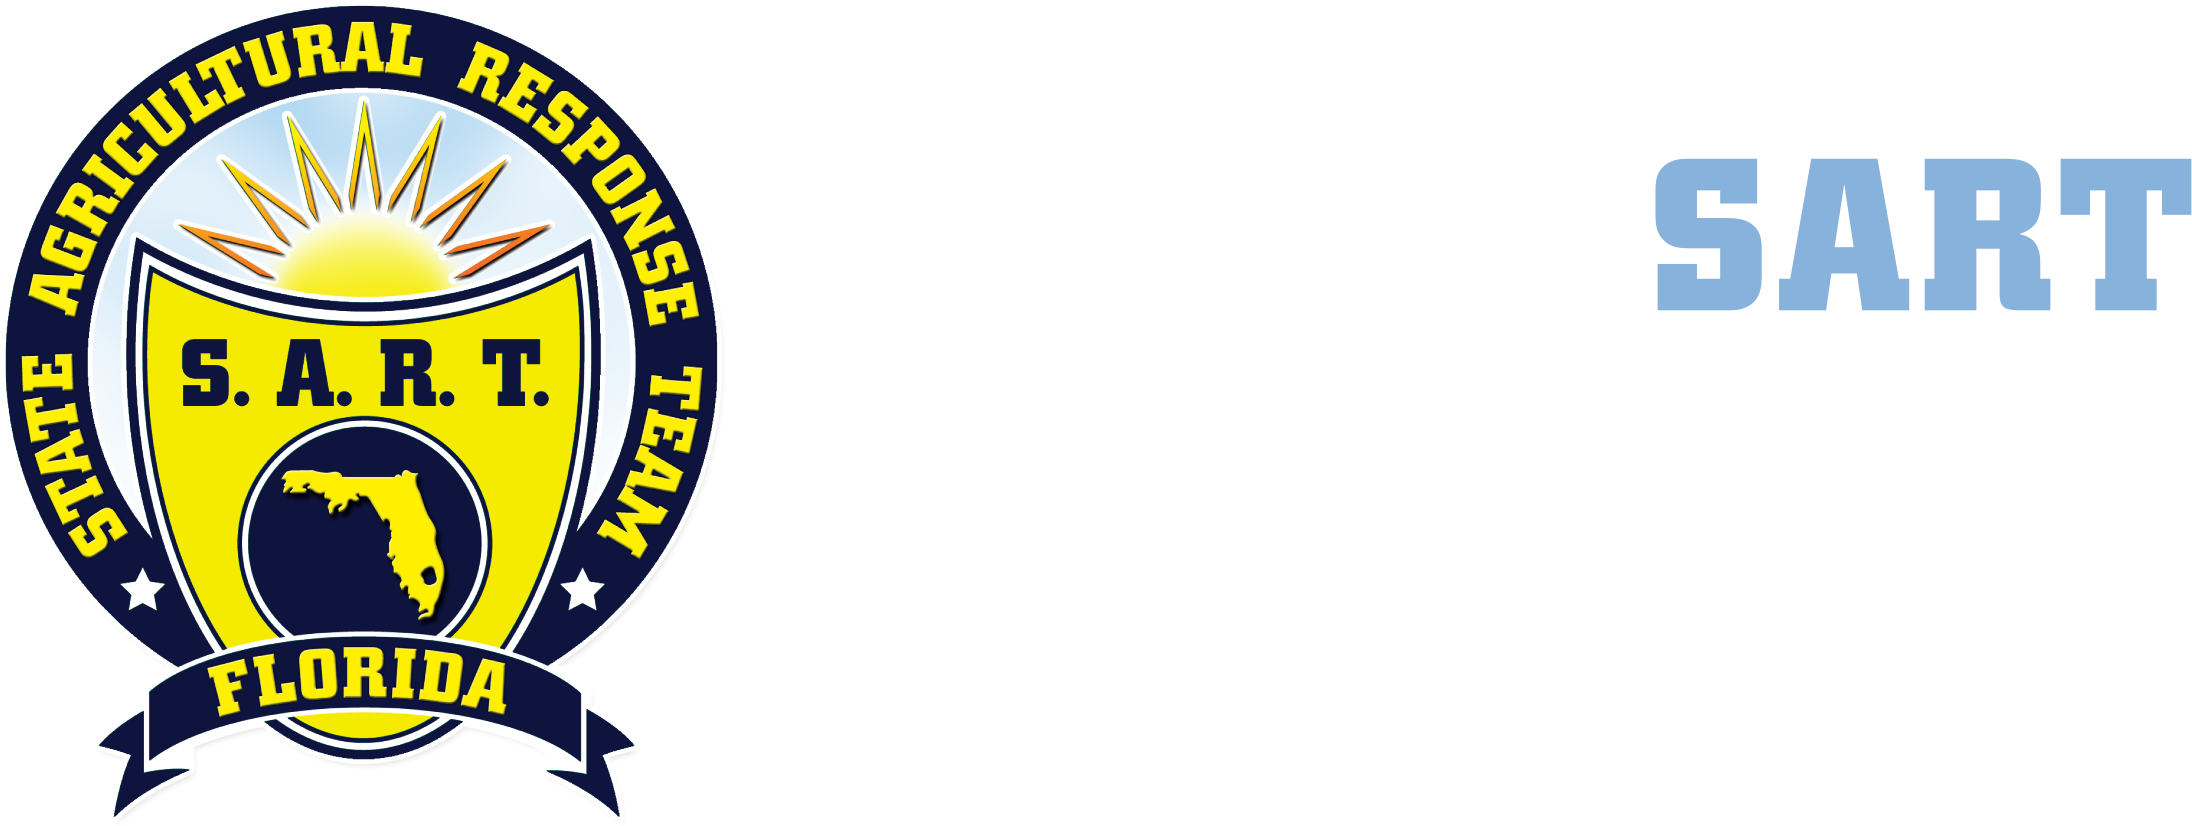 Florida S A R T Logo